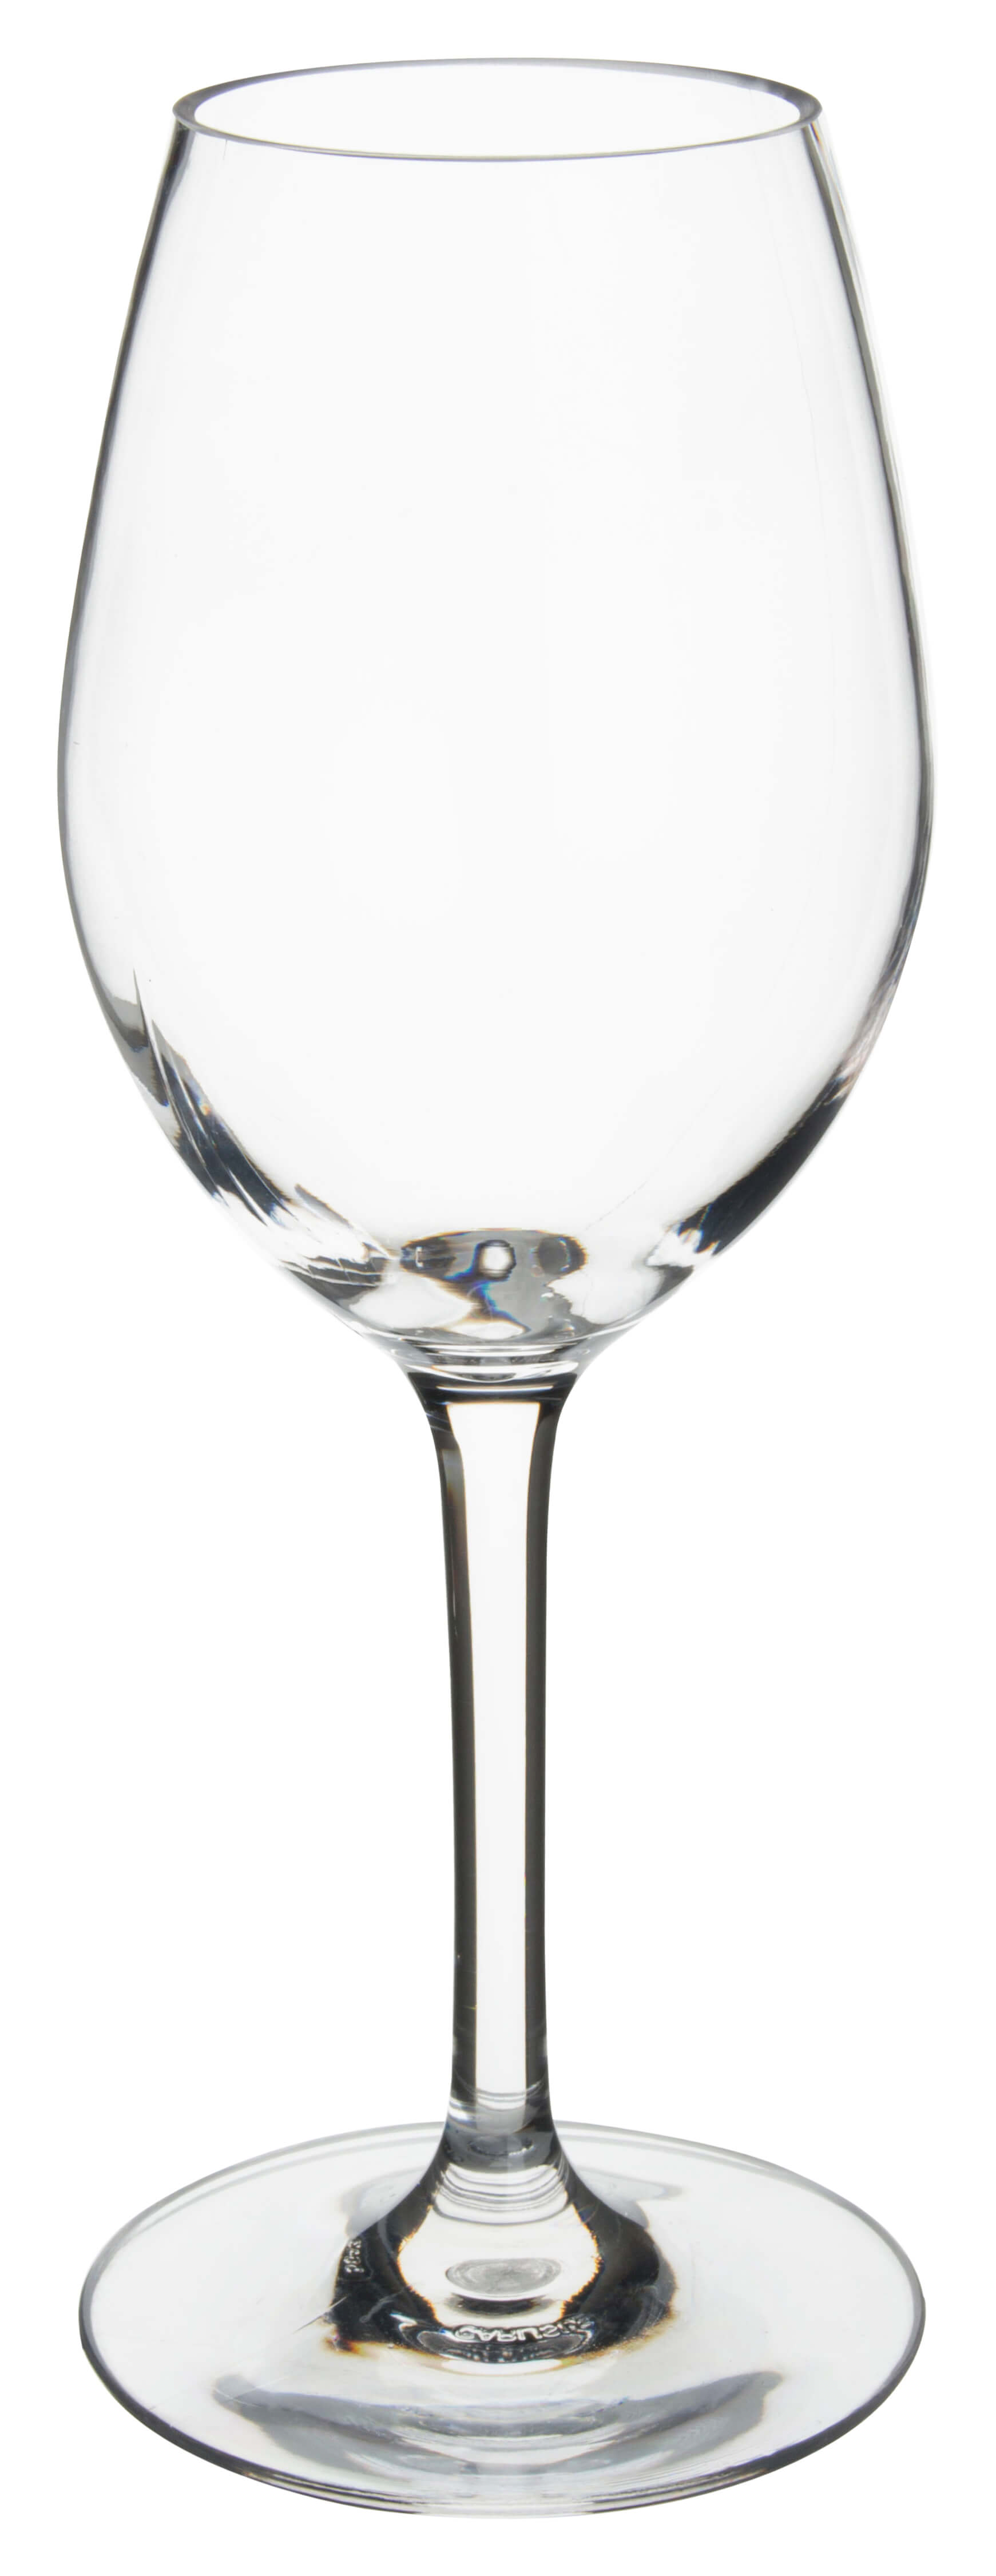 White wine glass Alibi Carlisle, plastics - 330ml (1 pc.)